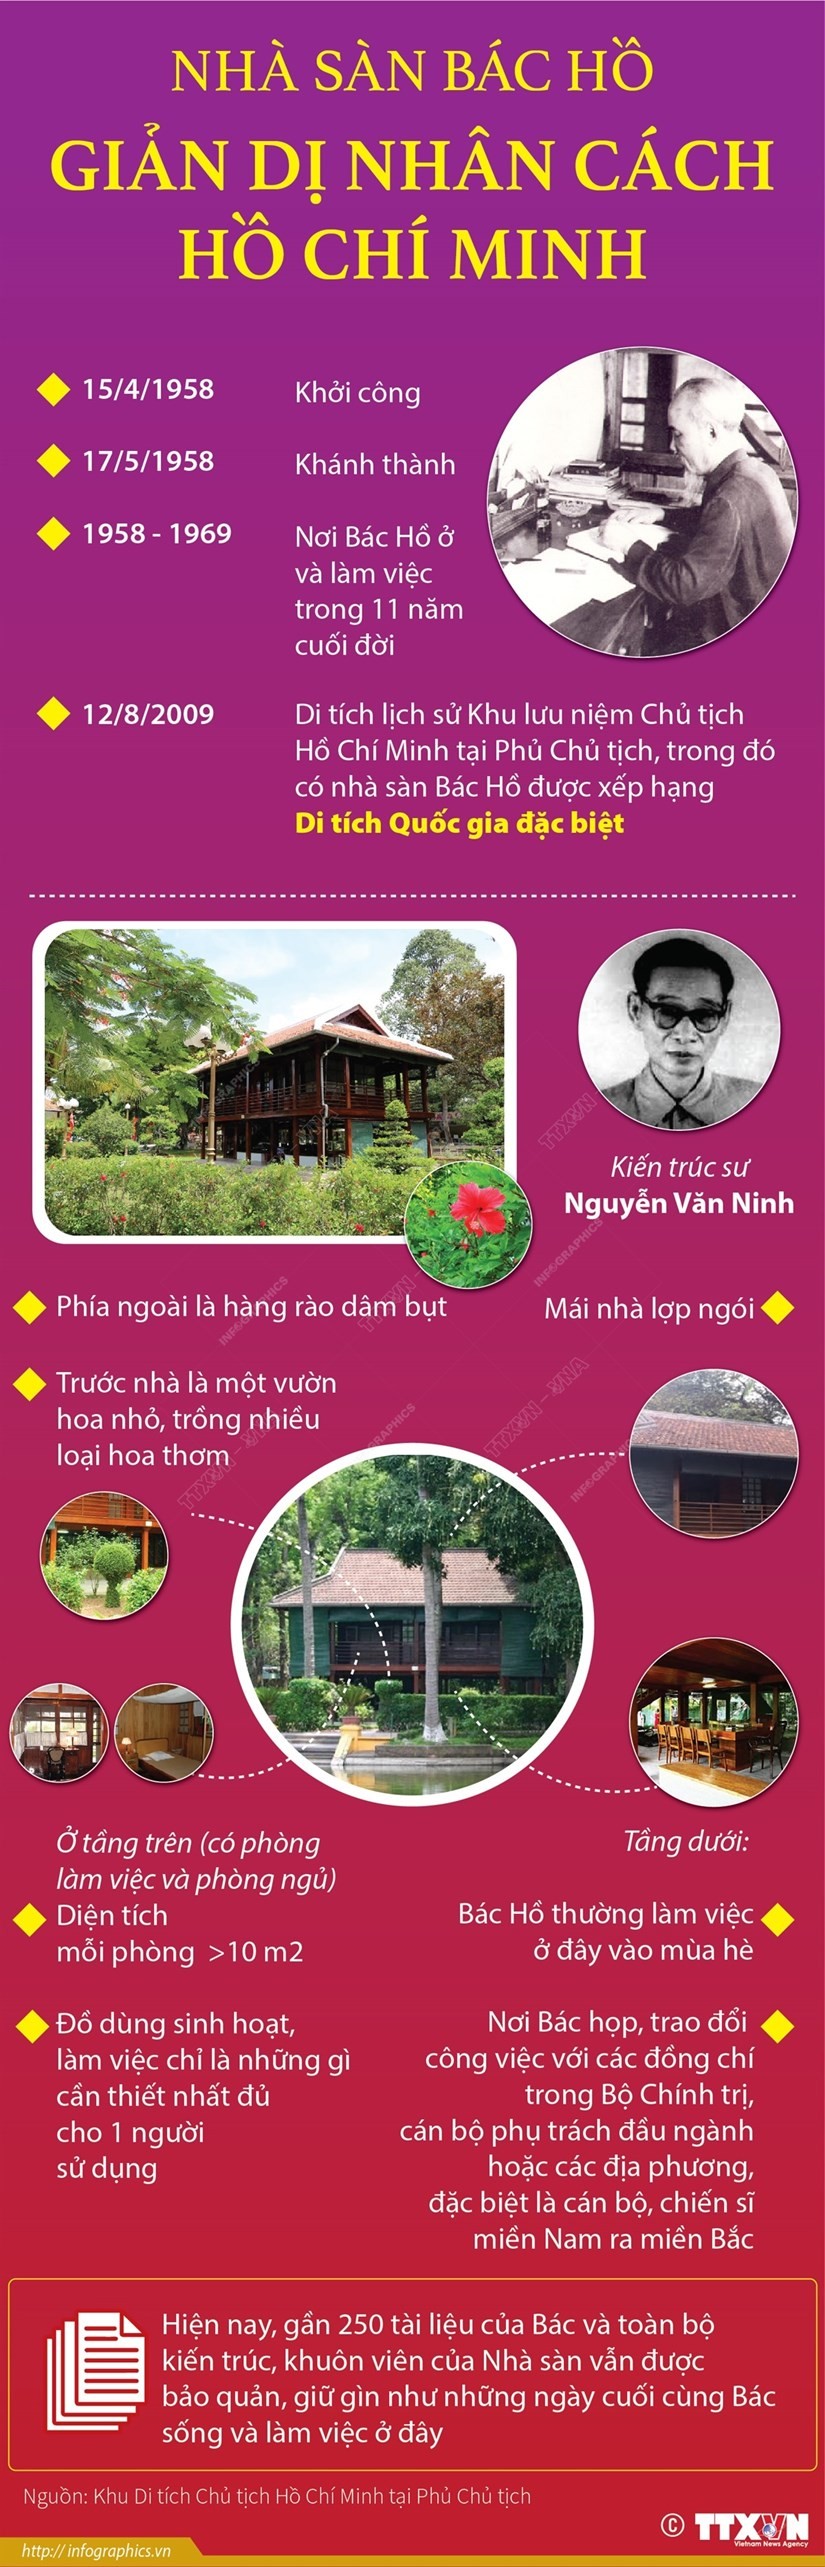 [Infographics] Nhà sàn Bác Hồ - Giản dị nhân cách Hồ Chí Minh | Phong cách | Vietnam+ (VietnamPlus)